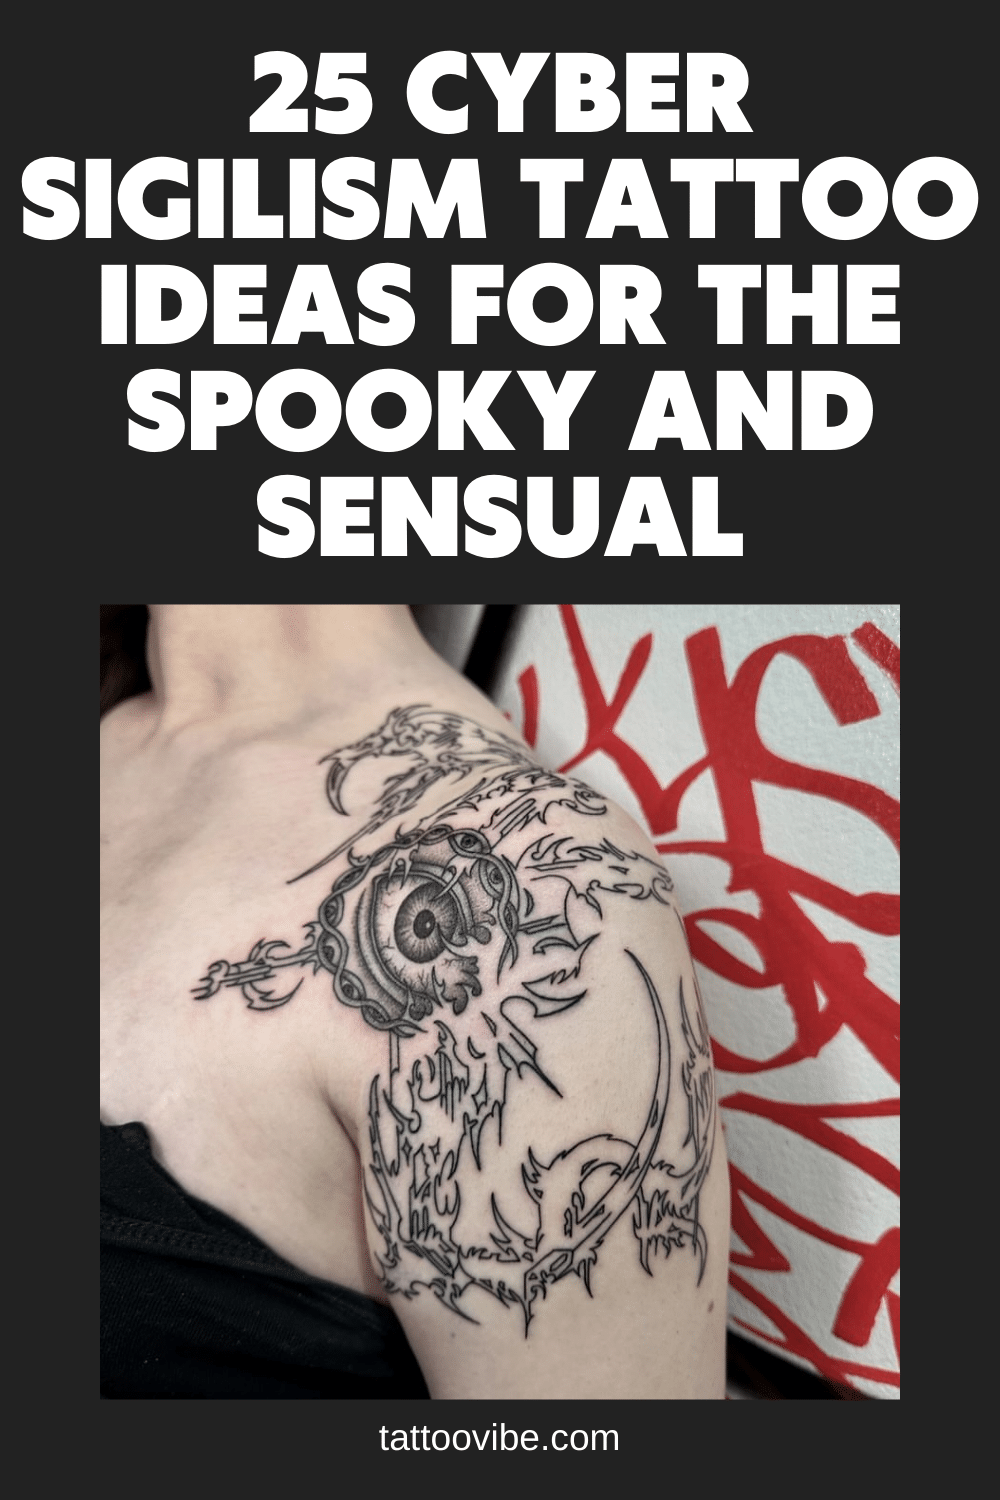 25 idee di tatuaggio sul sigilismo cibernetico per chi è spettrale e sensuale